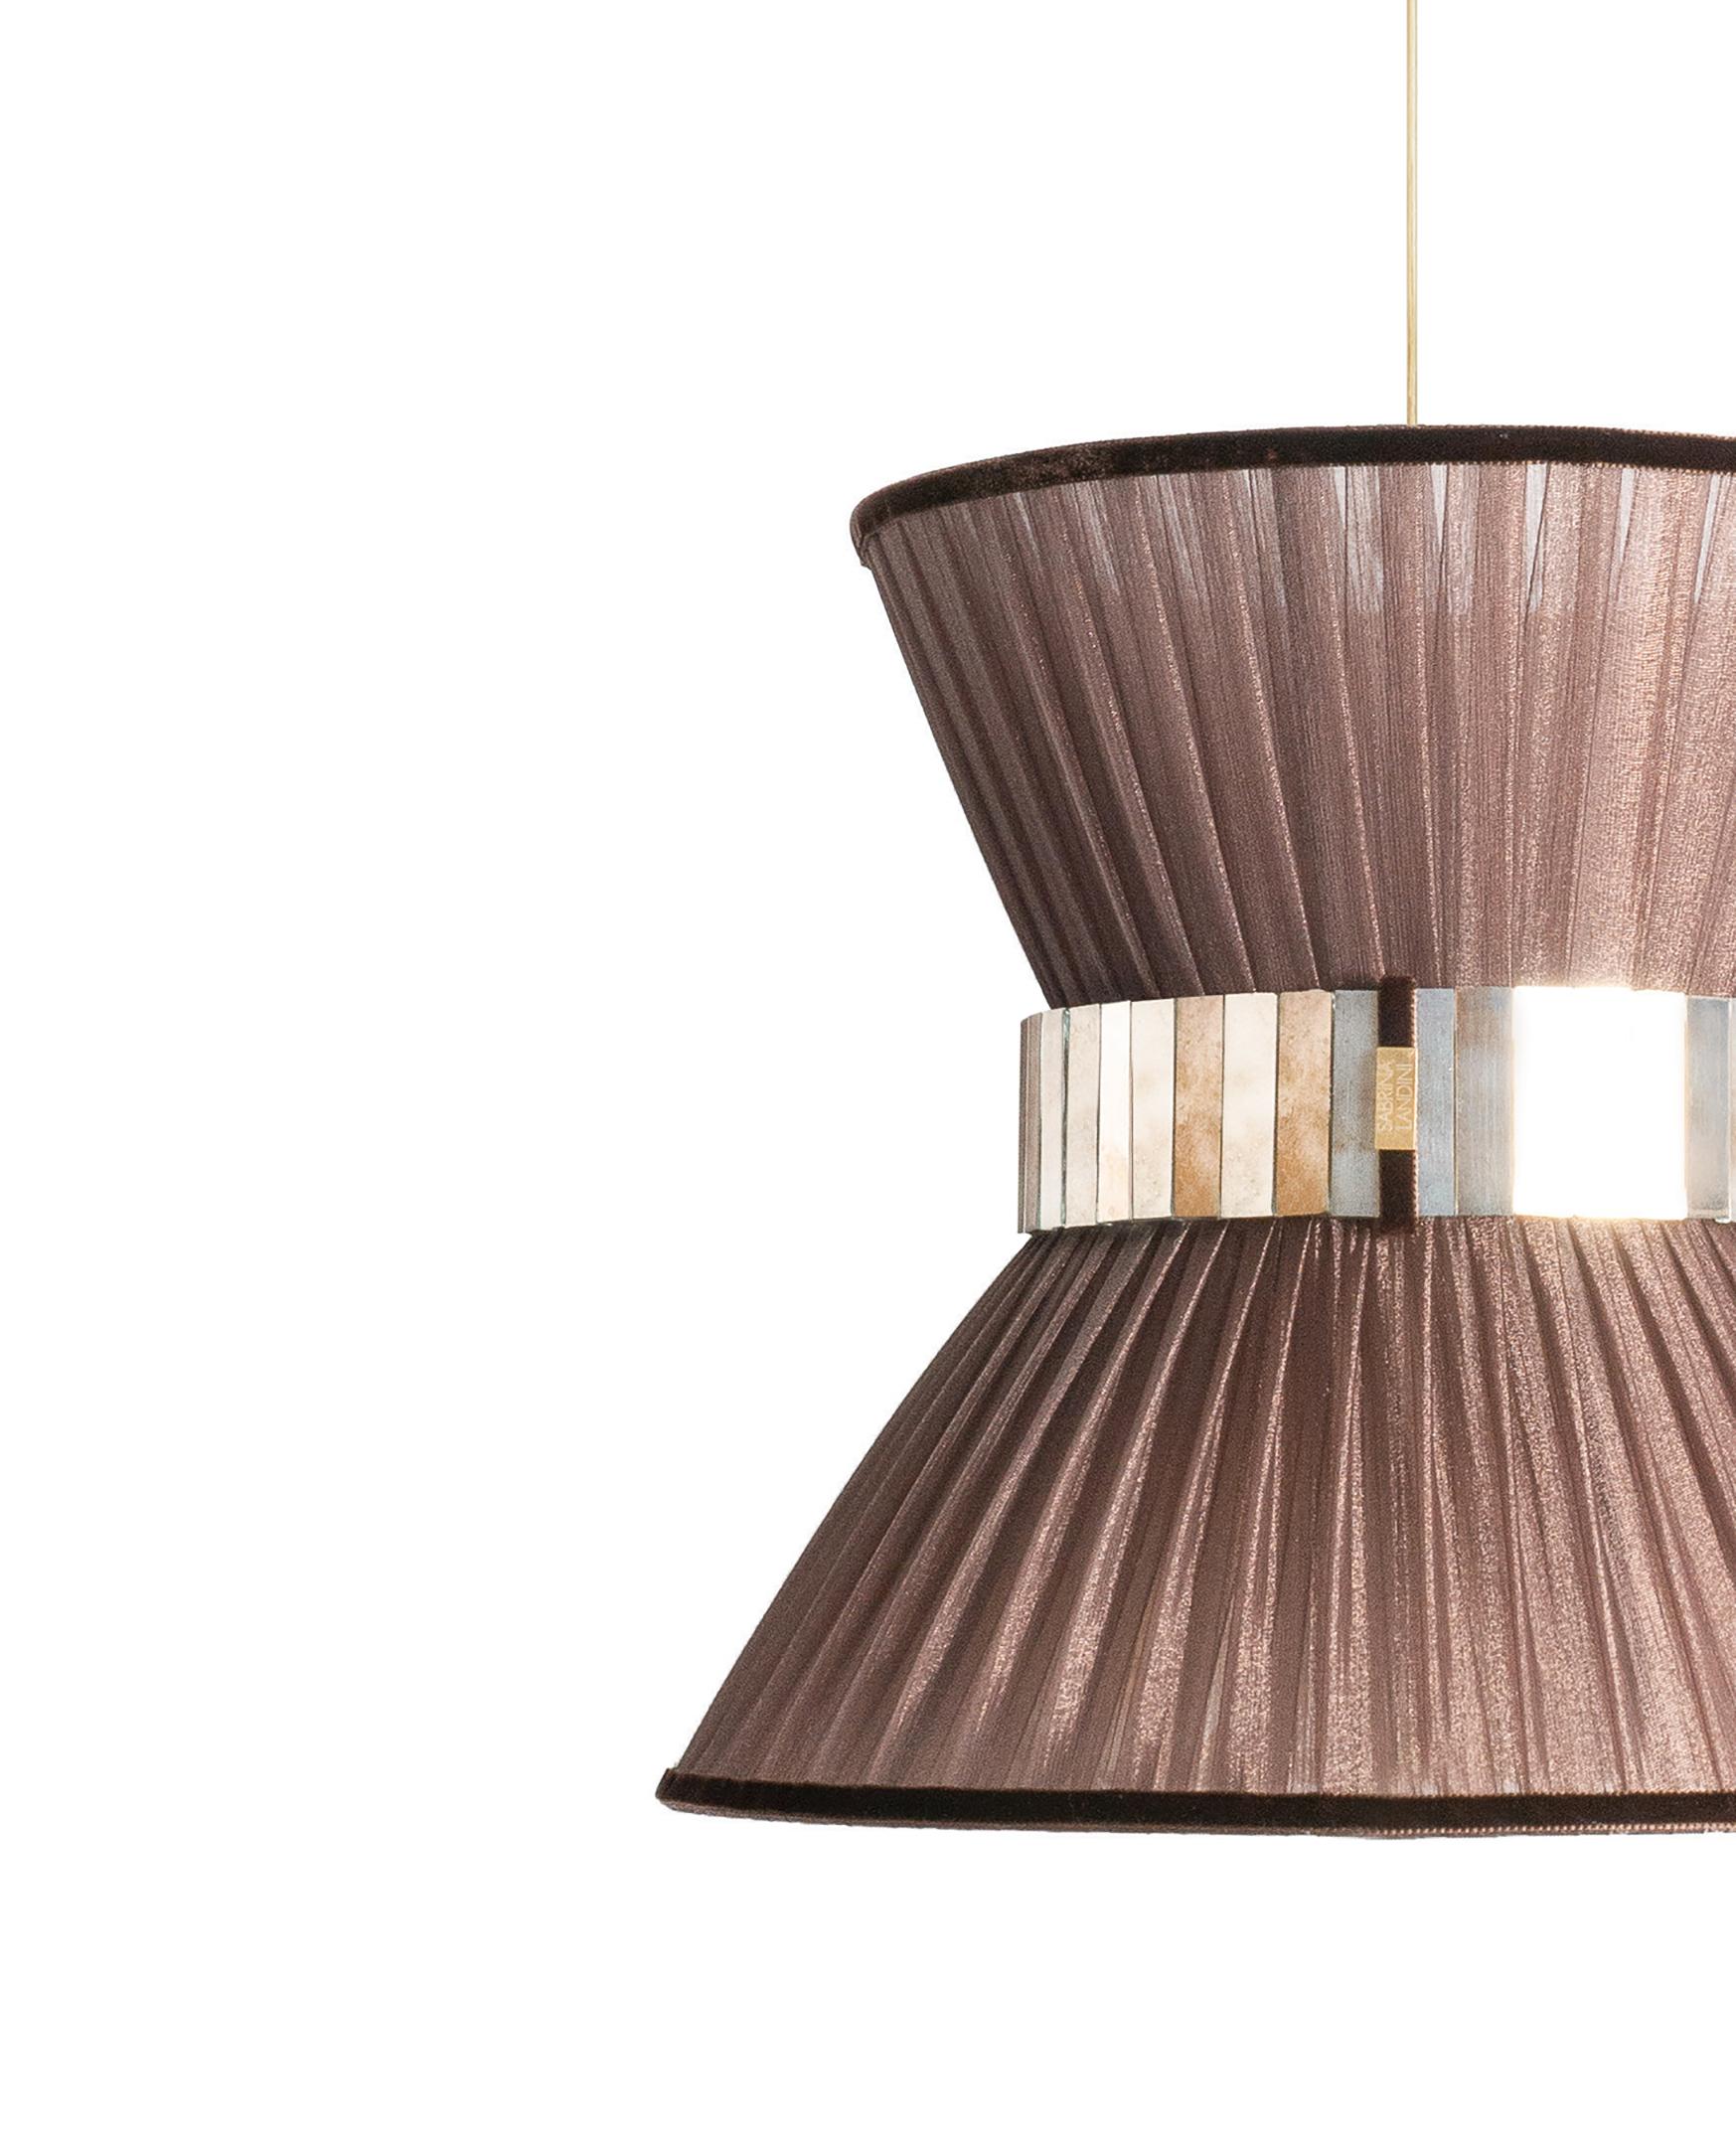 TIFFANY die kultige Lampe!

Sabrinas atemberaubende Collection'S von Tiffany-Lampen wird vorgestellt.
Sabrina Landini wählt die schönsten MATERIALIEN aus und stellt sie zu weltweit anerkannten Dekorationsartikeln zusammen.

Eleganz und Farben sind